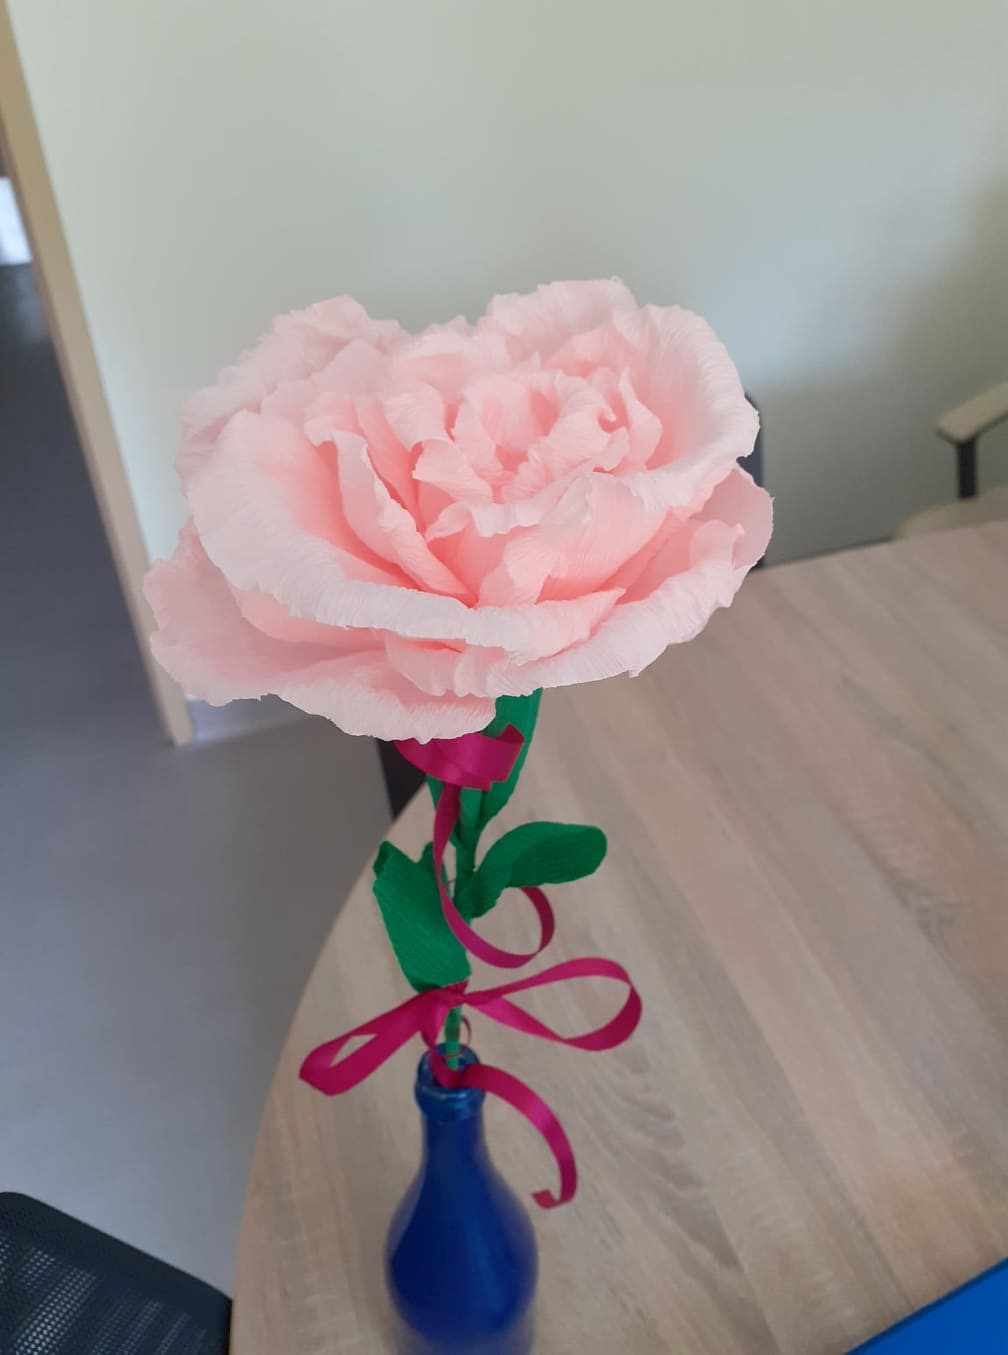 Obraz przedstawia stojący w niebieskim wazoniku, ręcznie zrobiony z bibuły kwiat (różową różę przewiązaną wstążką) wykonany podczas zajęć dla jednej z kliente DDP z okazji jej imienin.